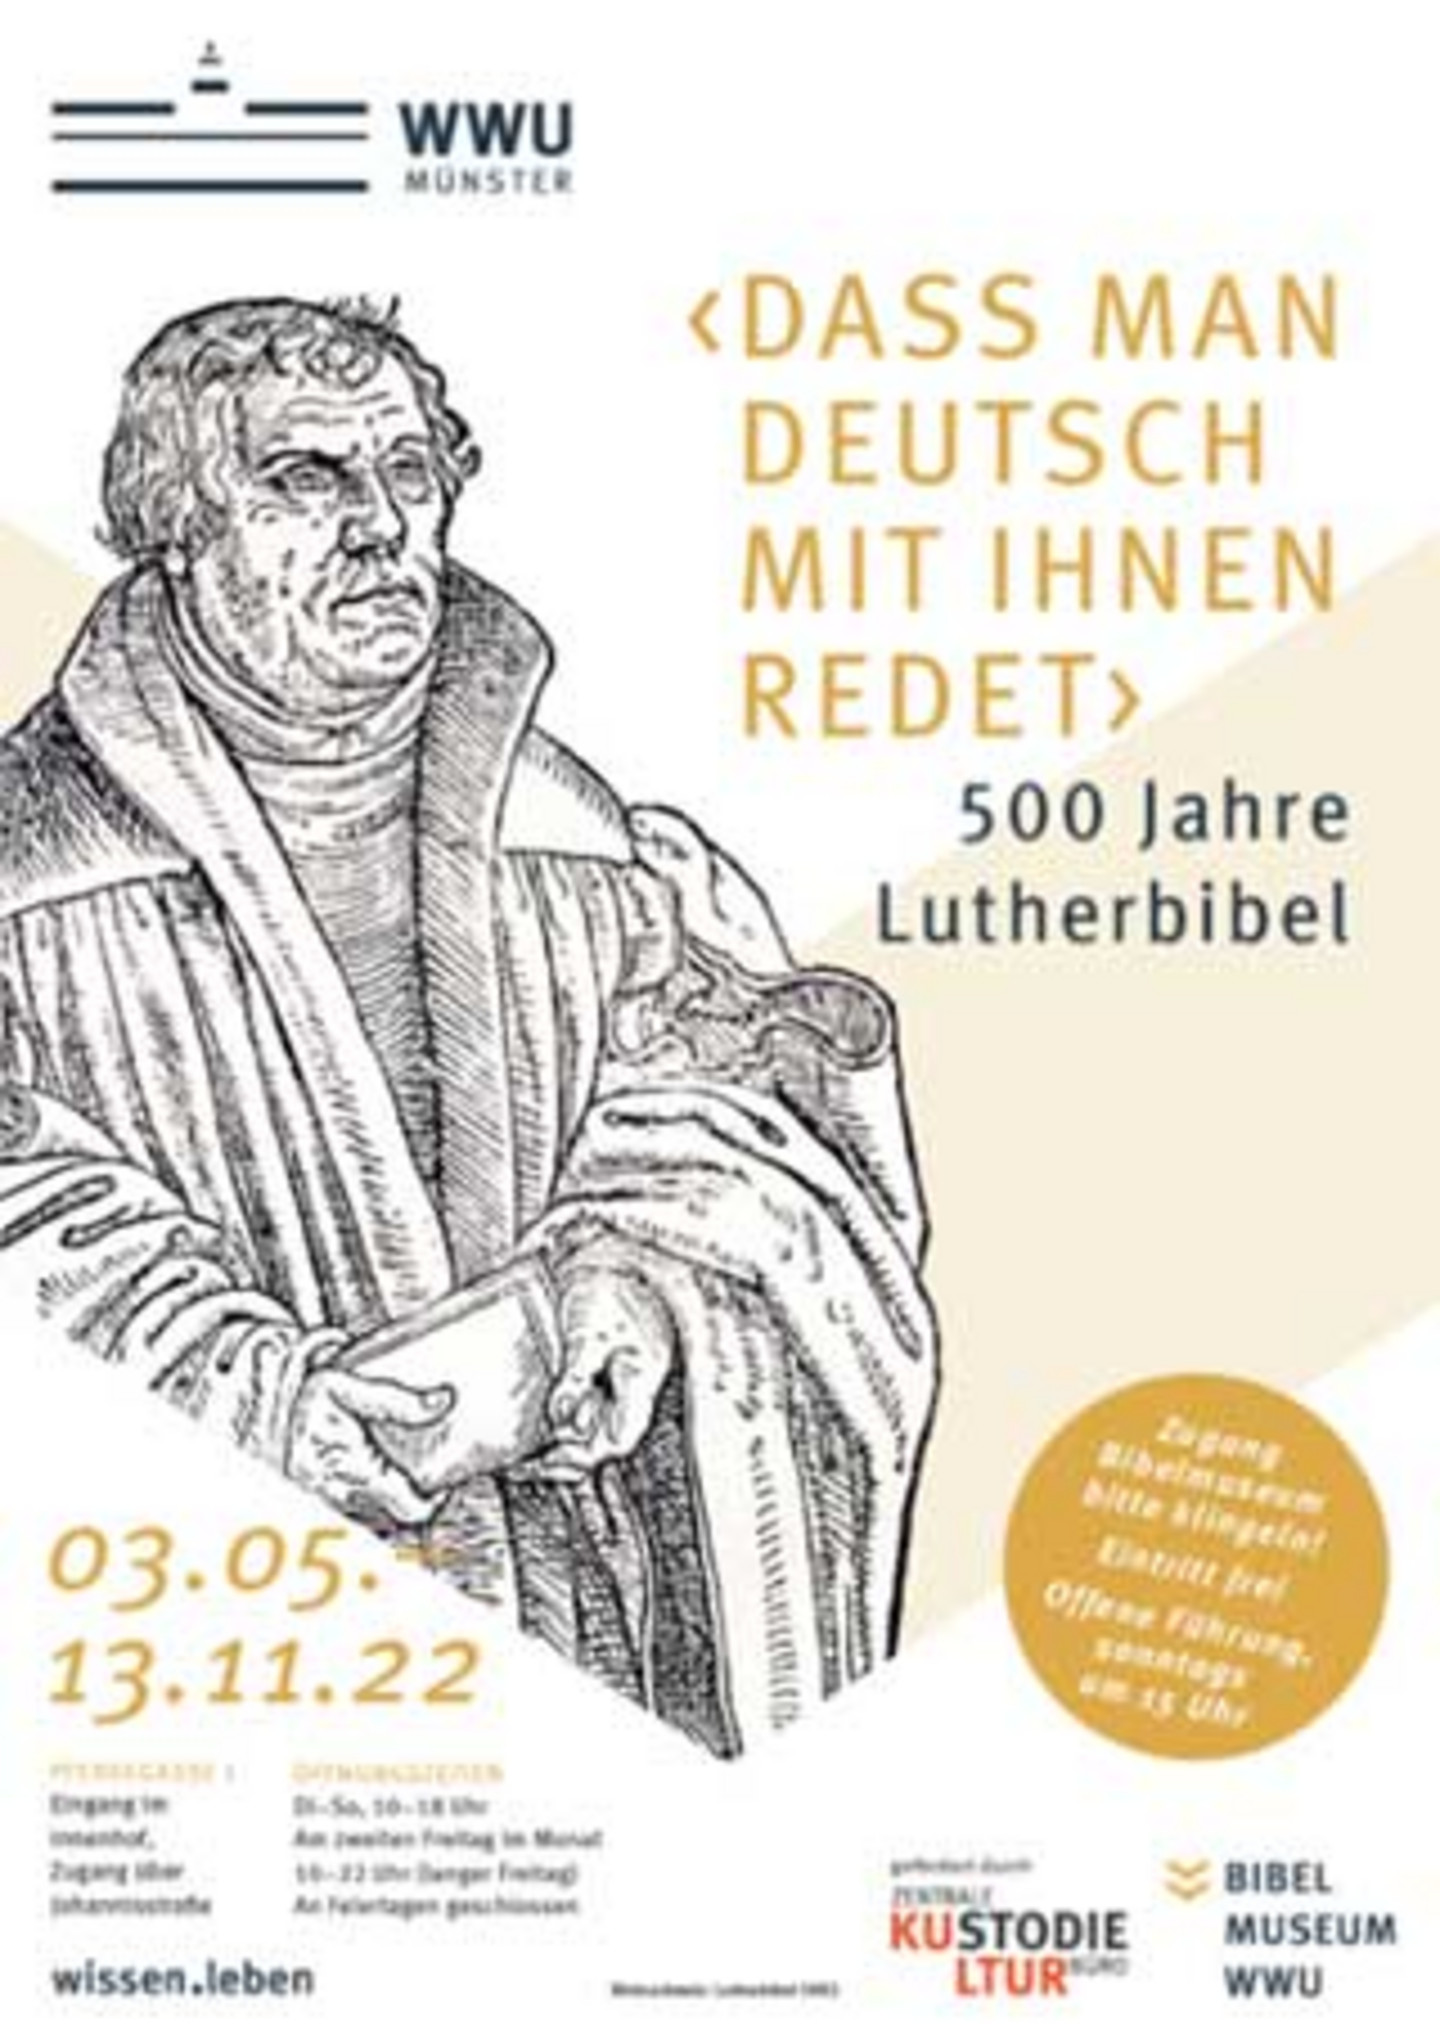 Plakat mit einer Zeichung von Martin Luther und der Überschrift "dass man deutsch mit ihnen redet".